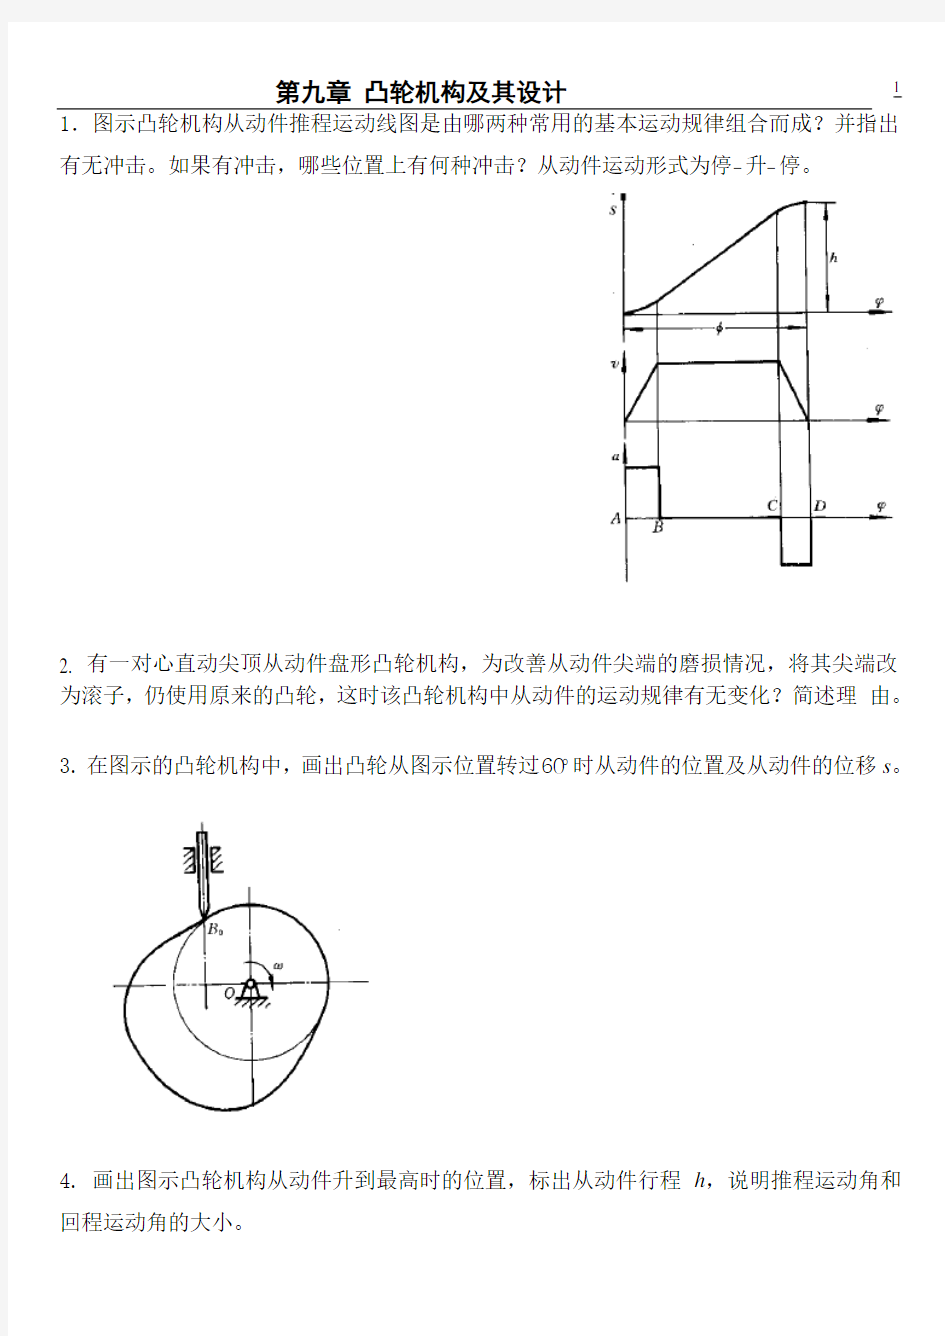 浙江工业大学机械原理第八章习题第九章习题